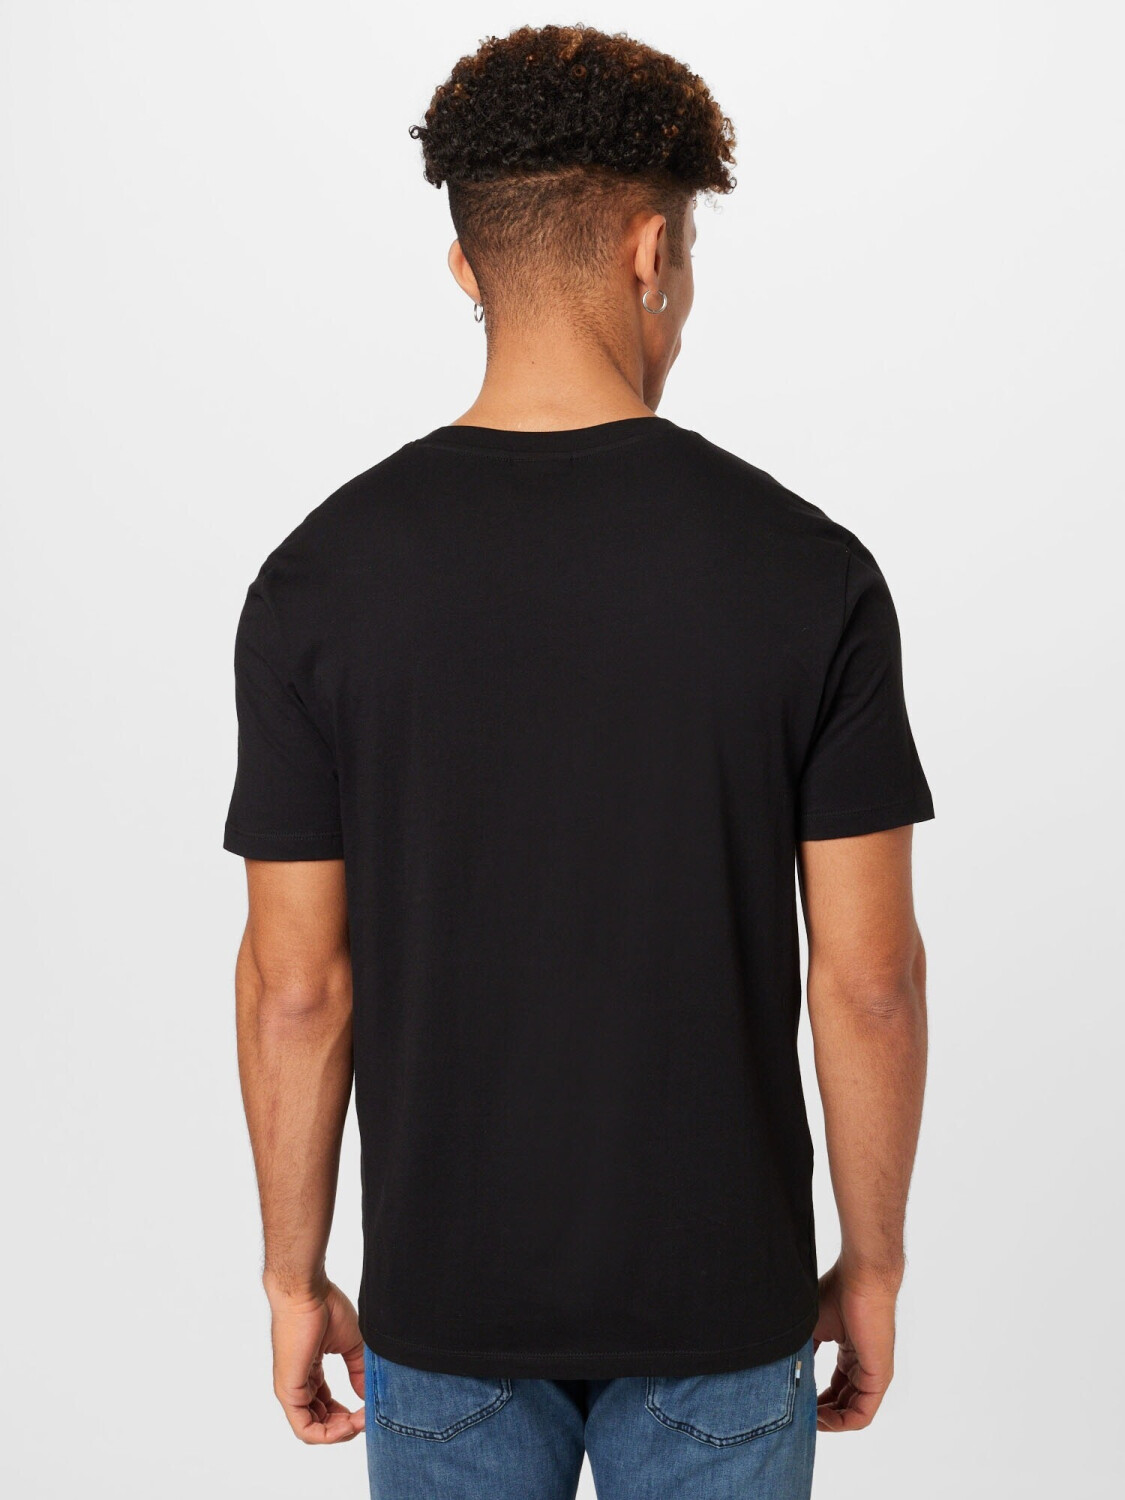 Hugo Zweier-Pack T-Shirts aus Baumwolle mit Stack-Logos --Dimento  (hbeu50492550960) Weiß / Schwarz ab 57,99 € | Preisvergleich bei